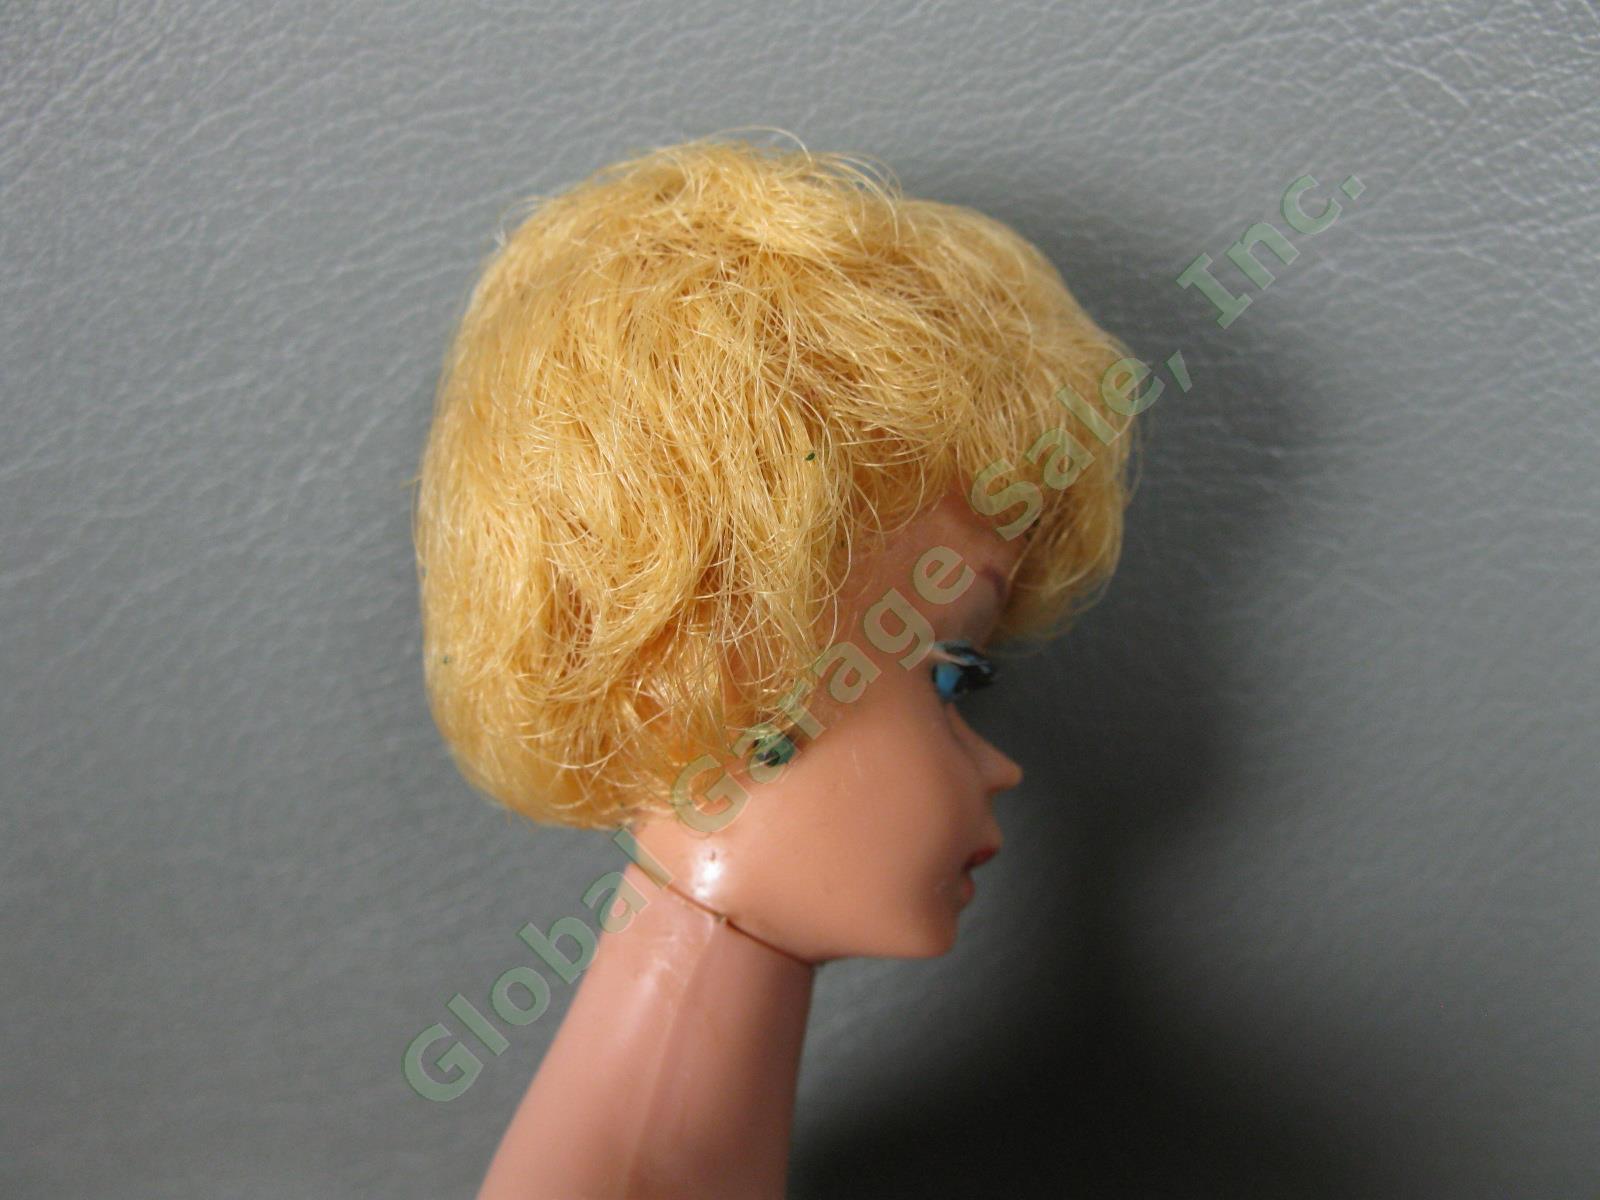 Original Vintage 850 Bubblecut Blonde Barbie Doll Black White Swimsuit Japan Box 2